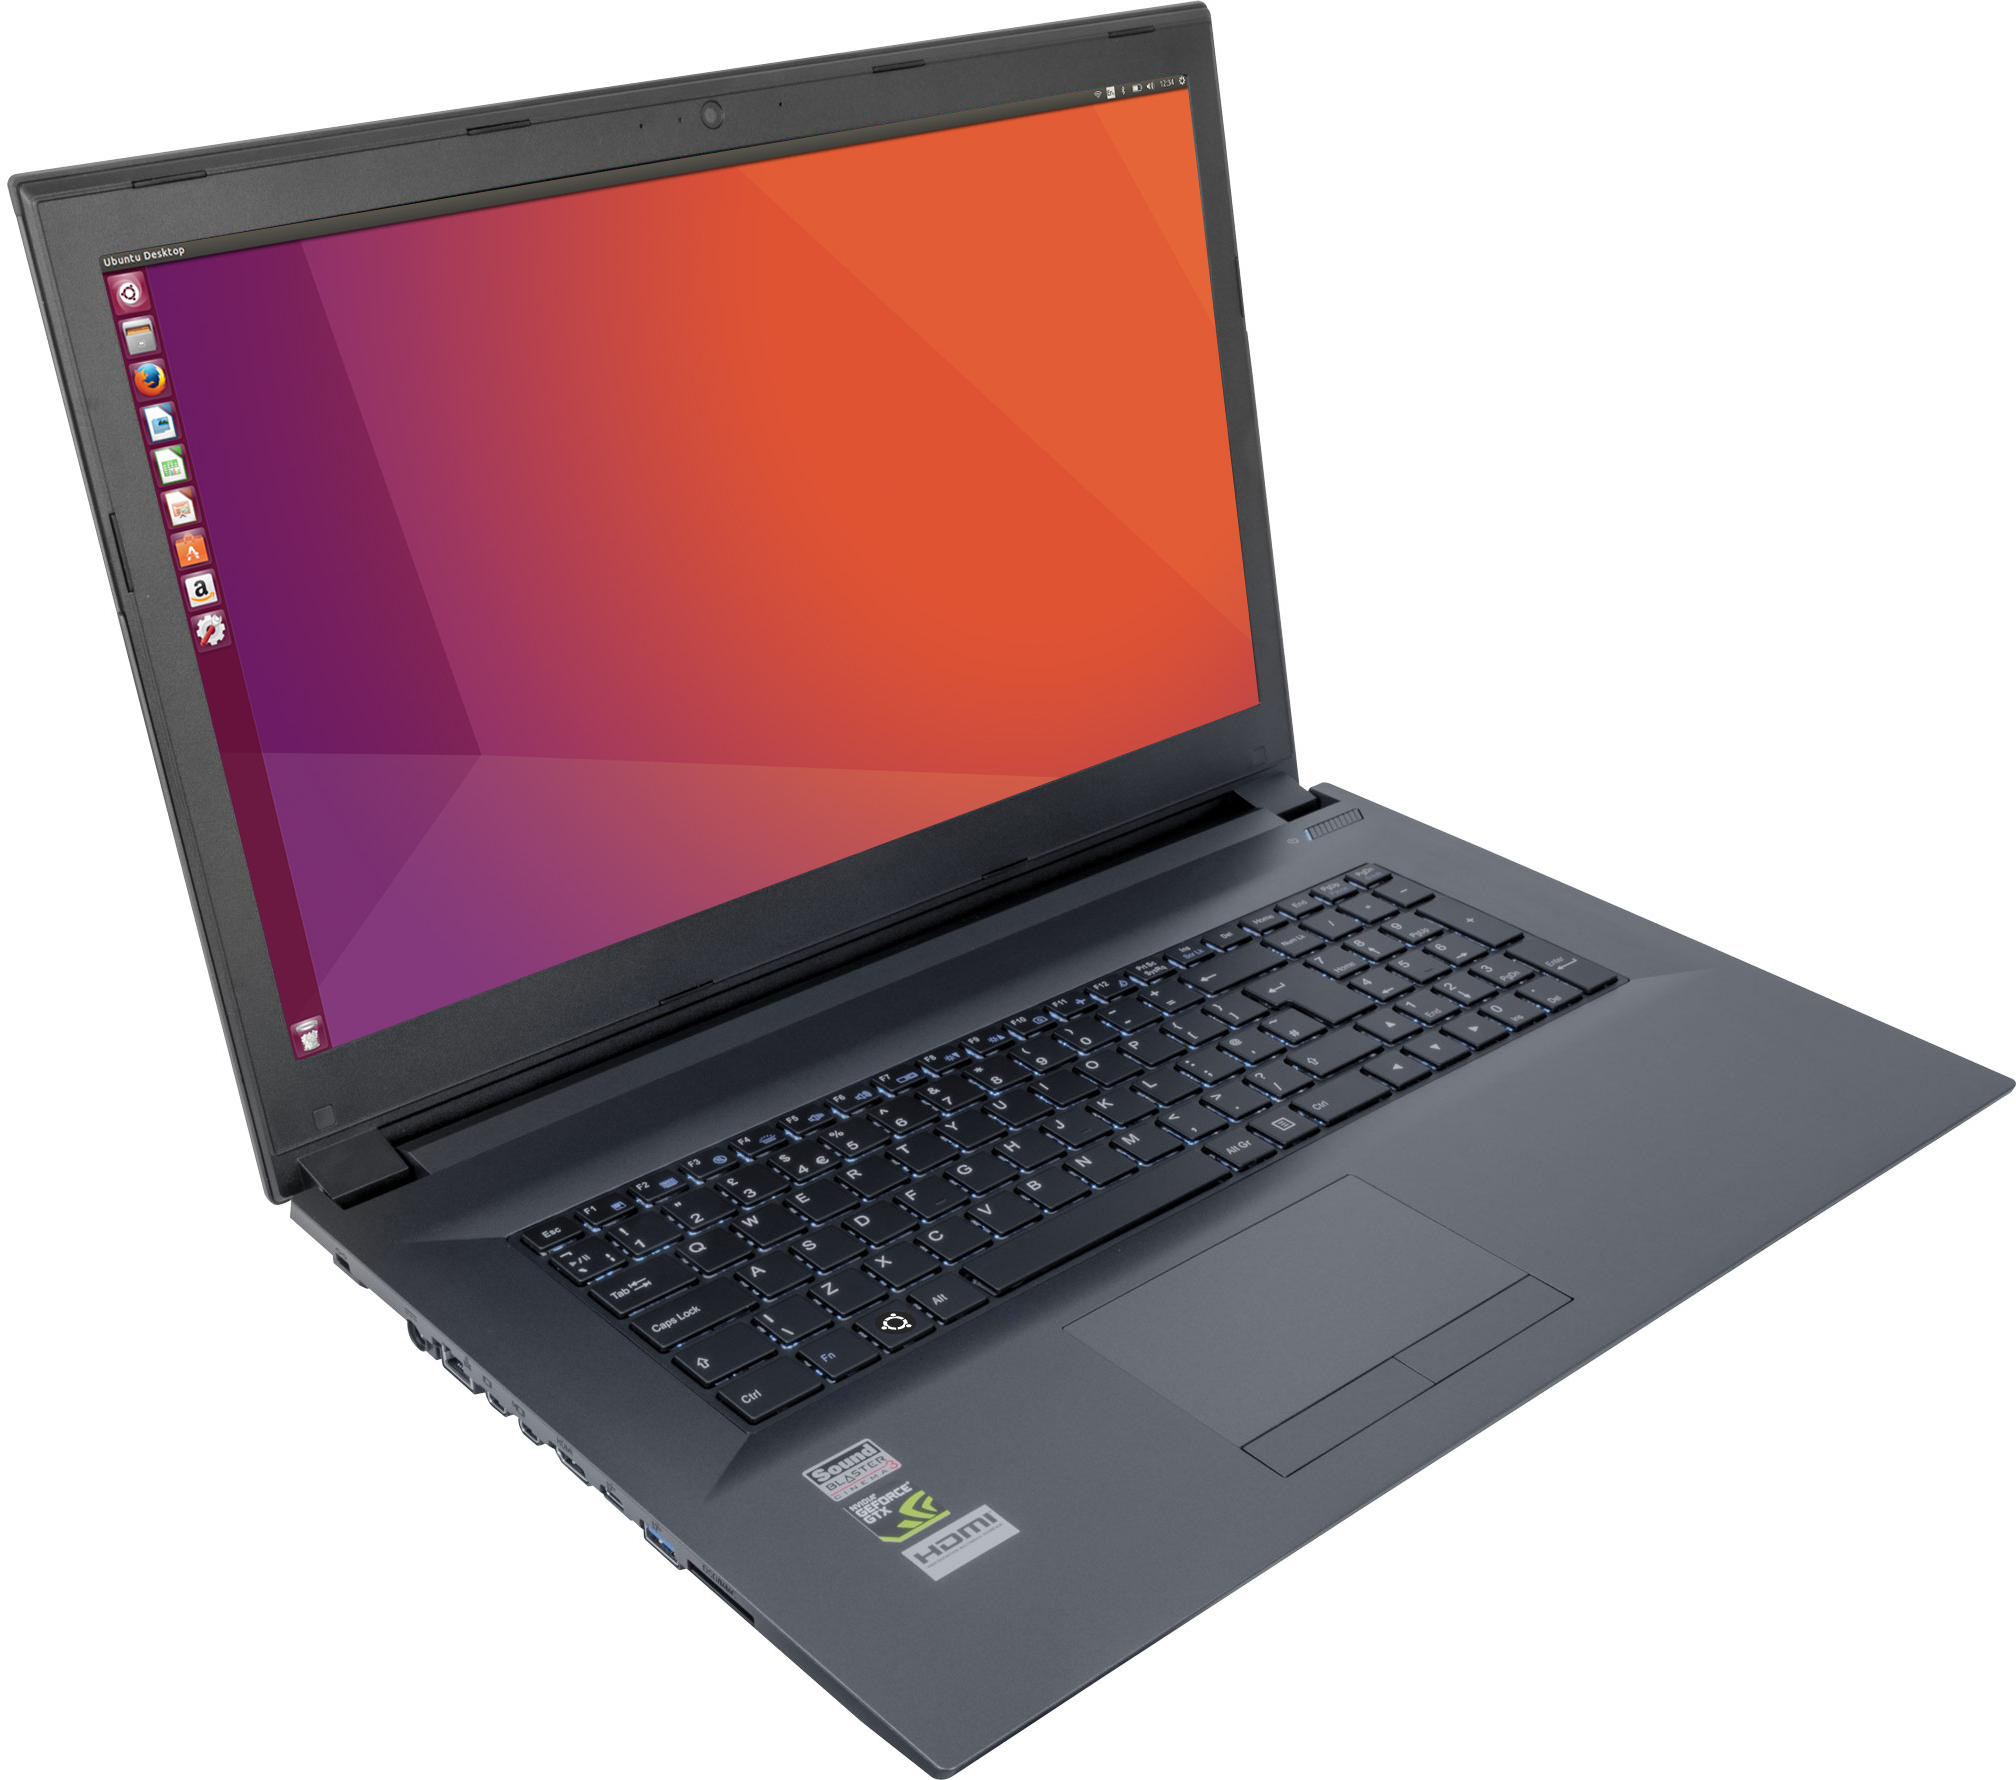 A laptop with Ubuntu